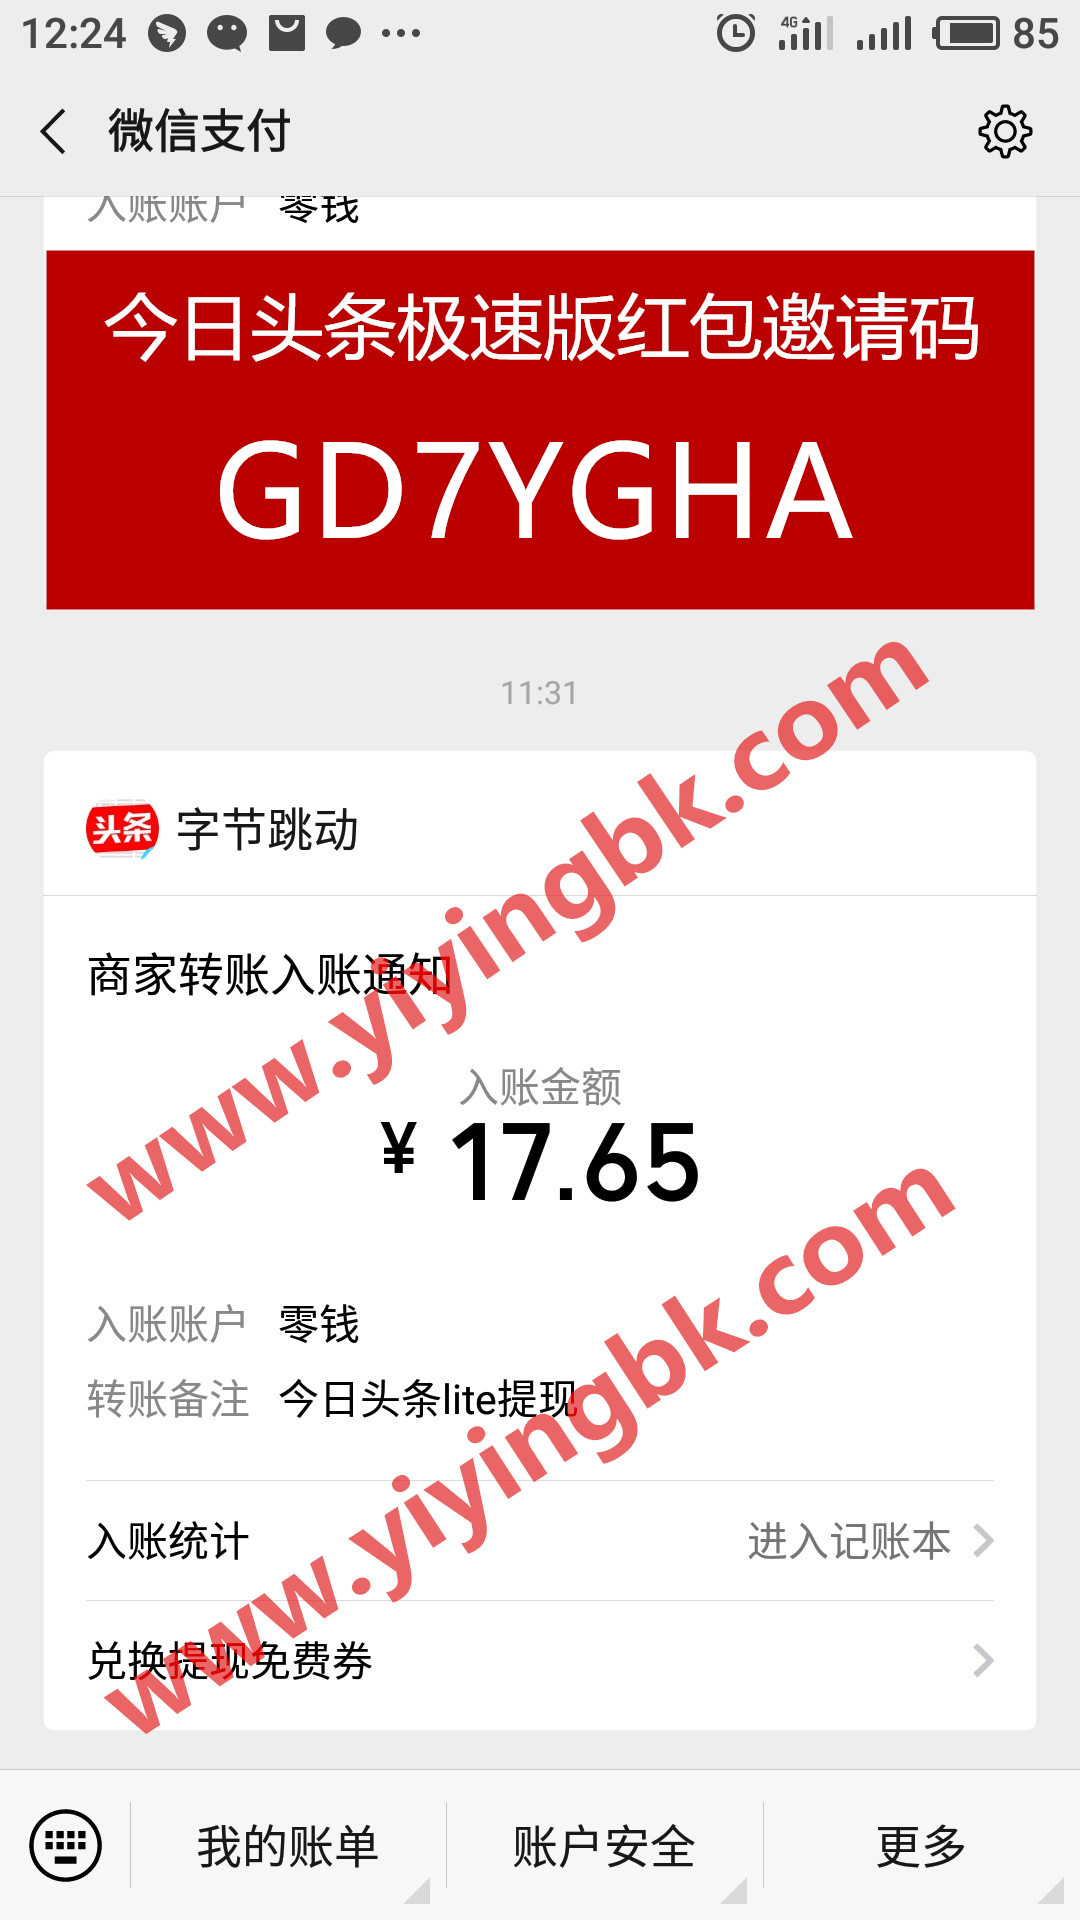 今日头条赚钱极速版，微信提现17.65元支付快速到账。www.yiyingbk.com